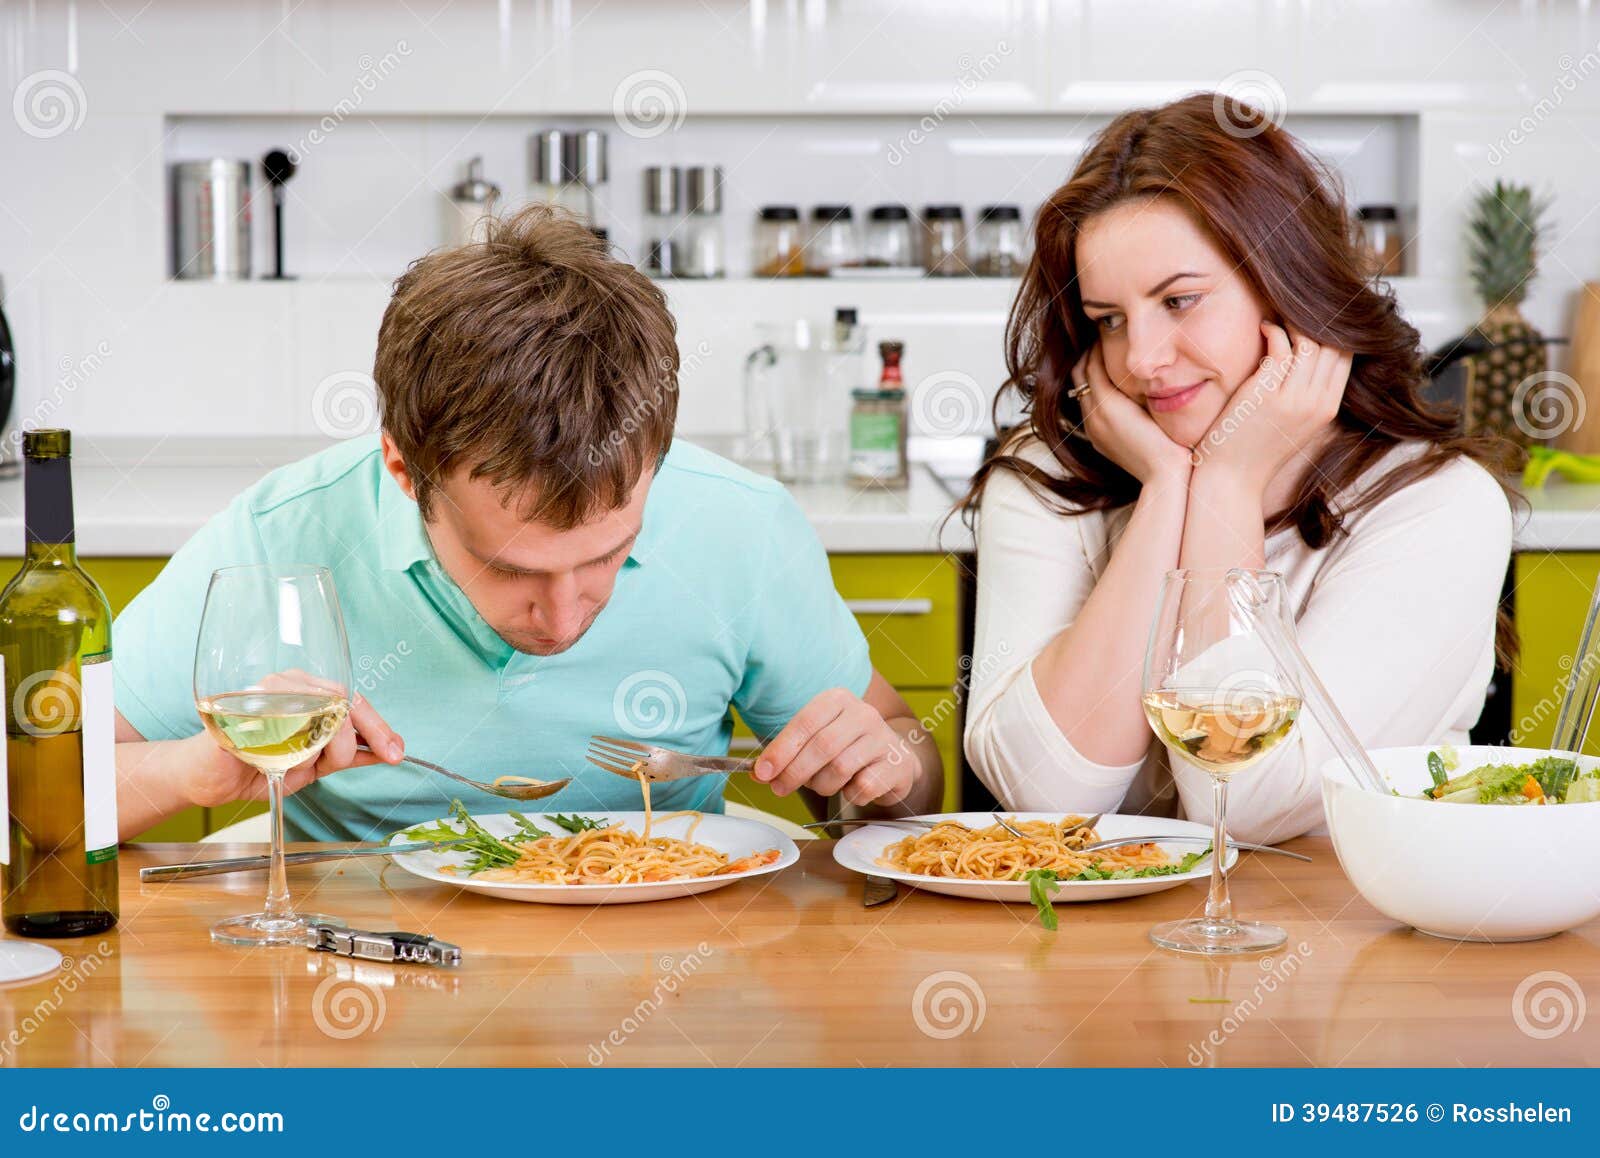 Жена готовит кушать. Мужчина и женщина ужинают. Мужчина и женщина завтракают. Супруги за столом. Муж ужинает на кухне.